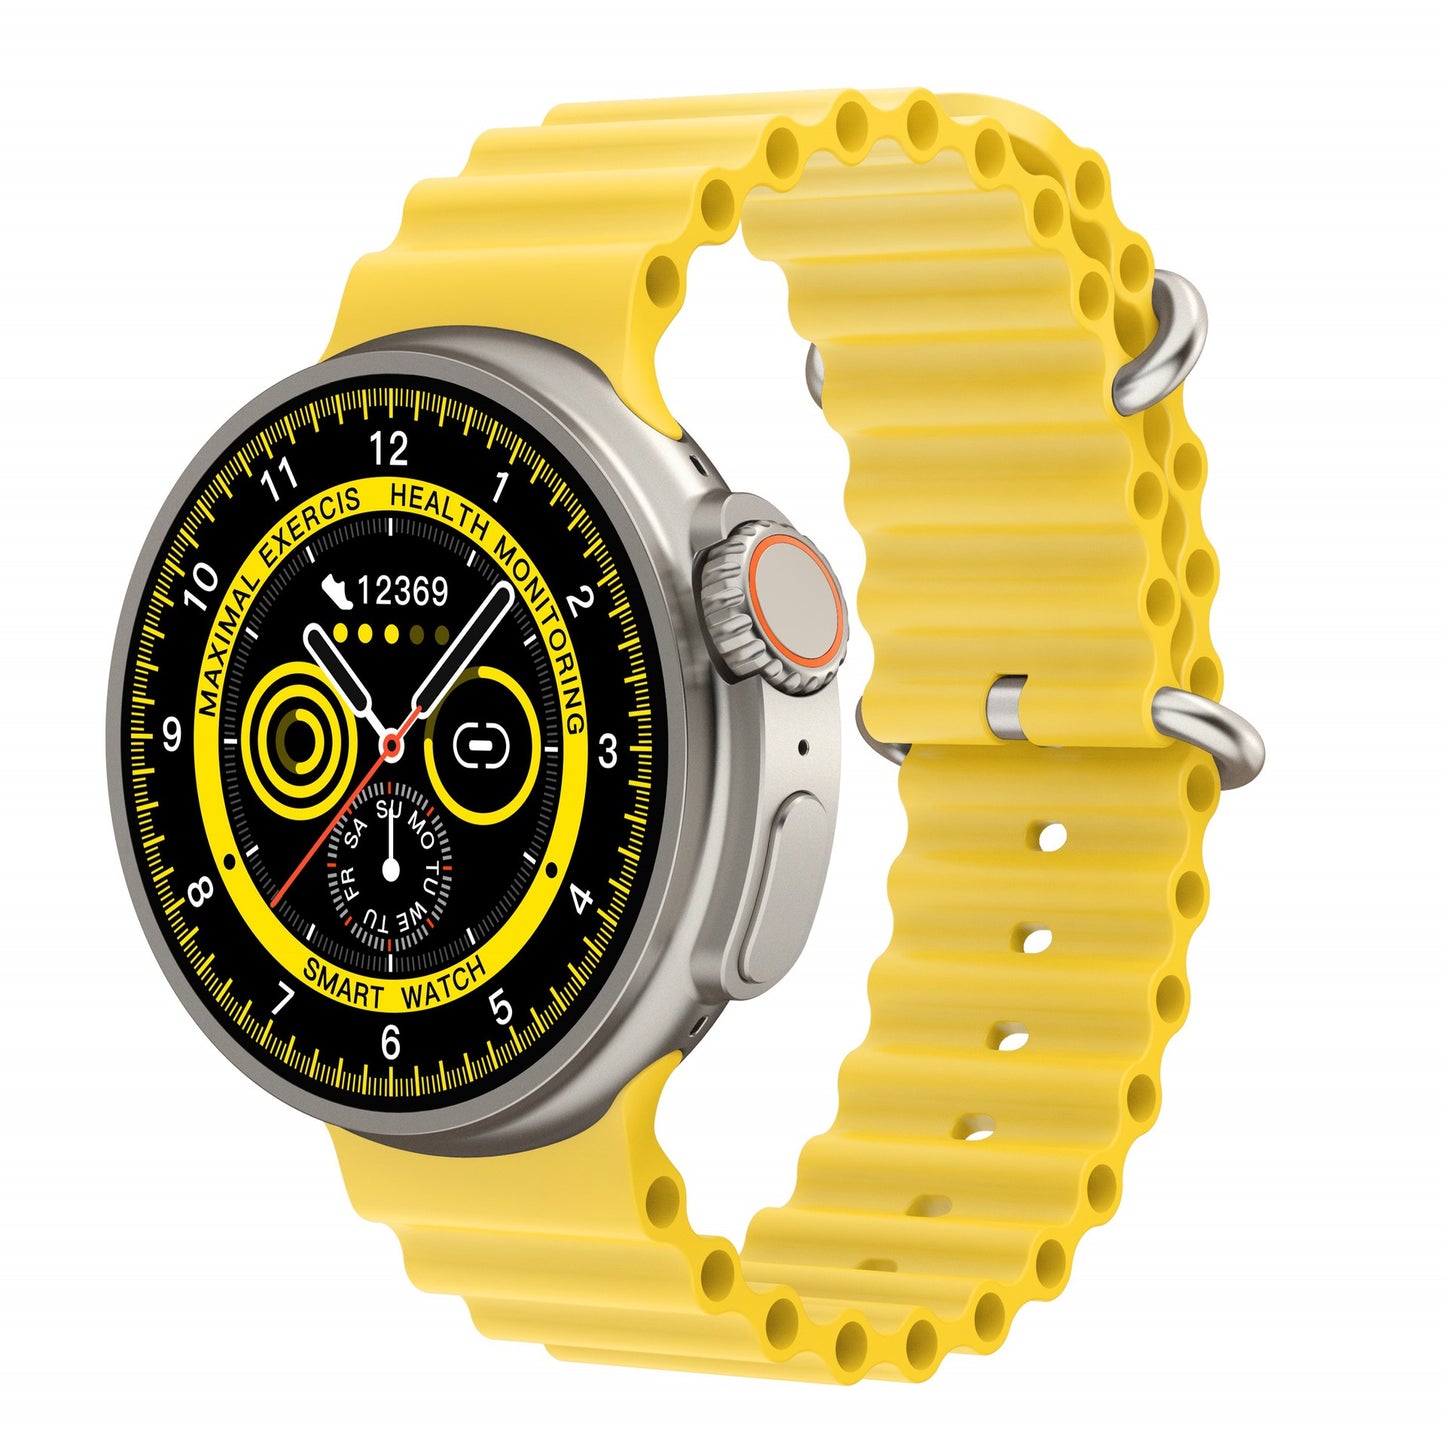 K9 EliteX 1.39 Smartwatch